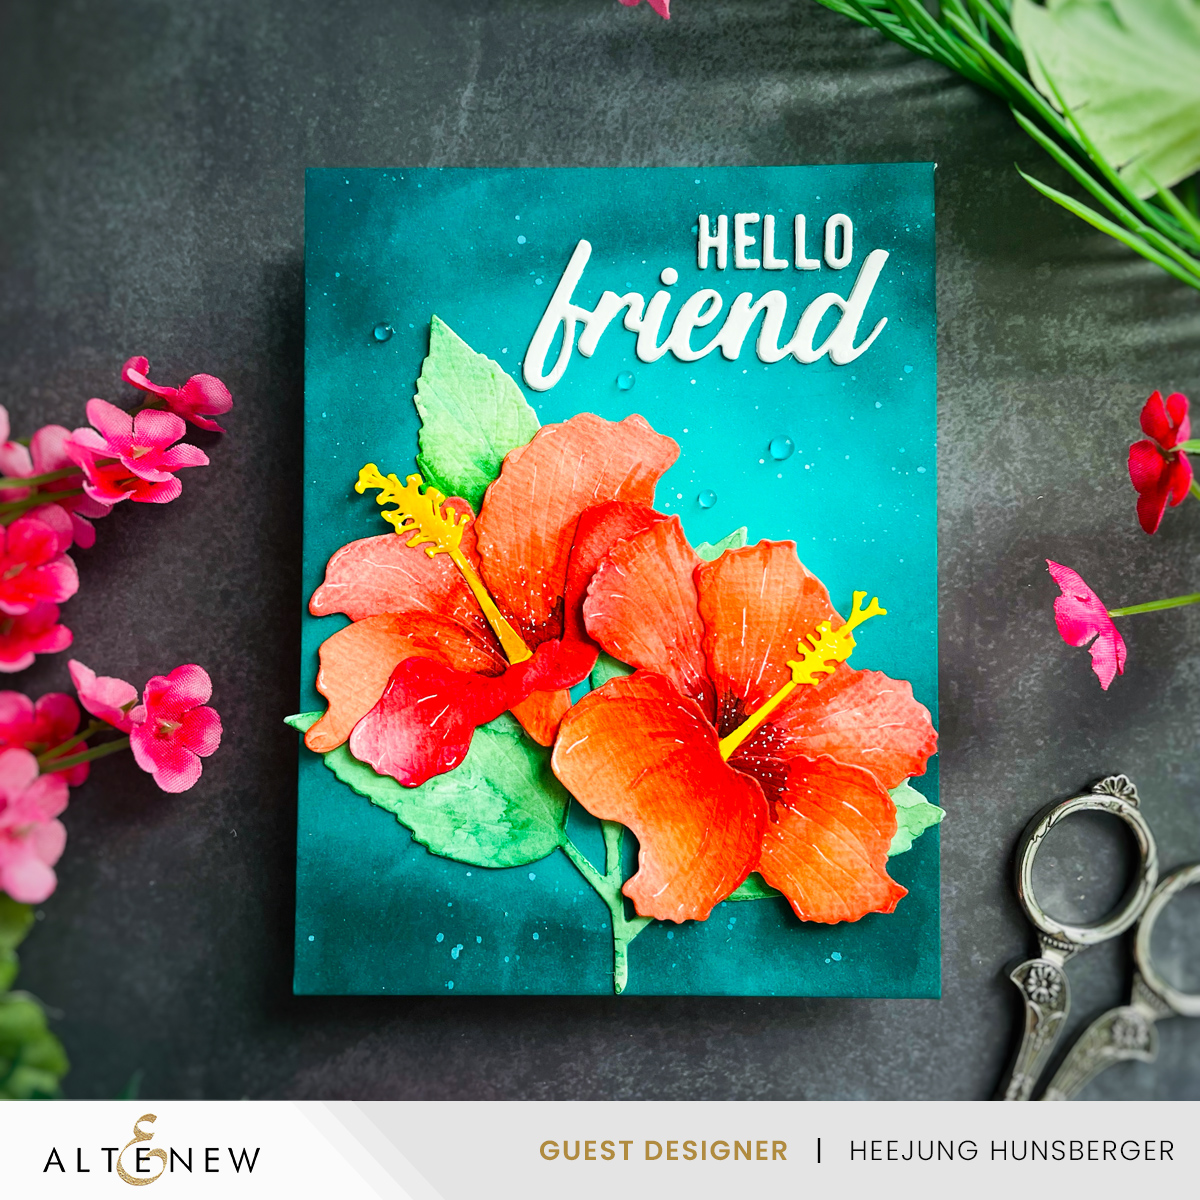 Altenew- Craft-A-Flower: Hibiscus Card